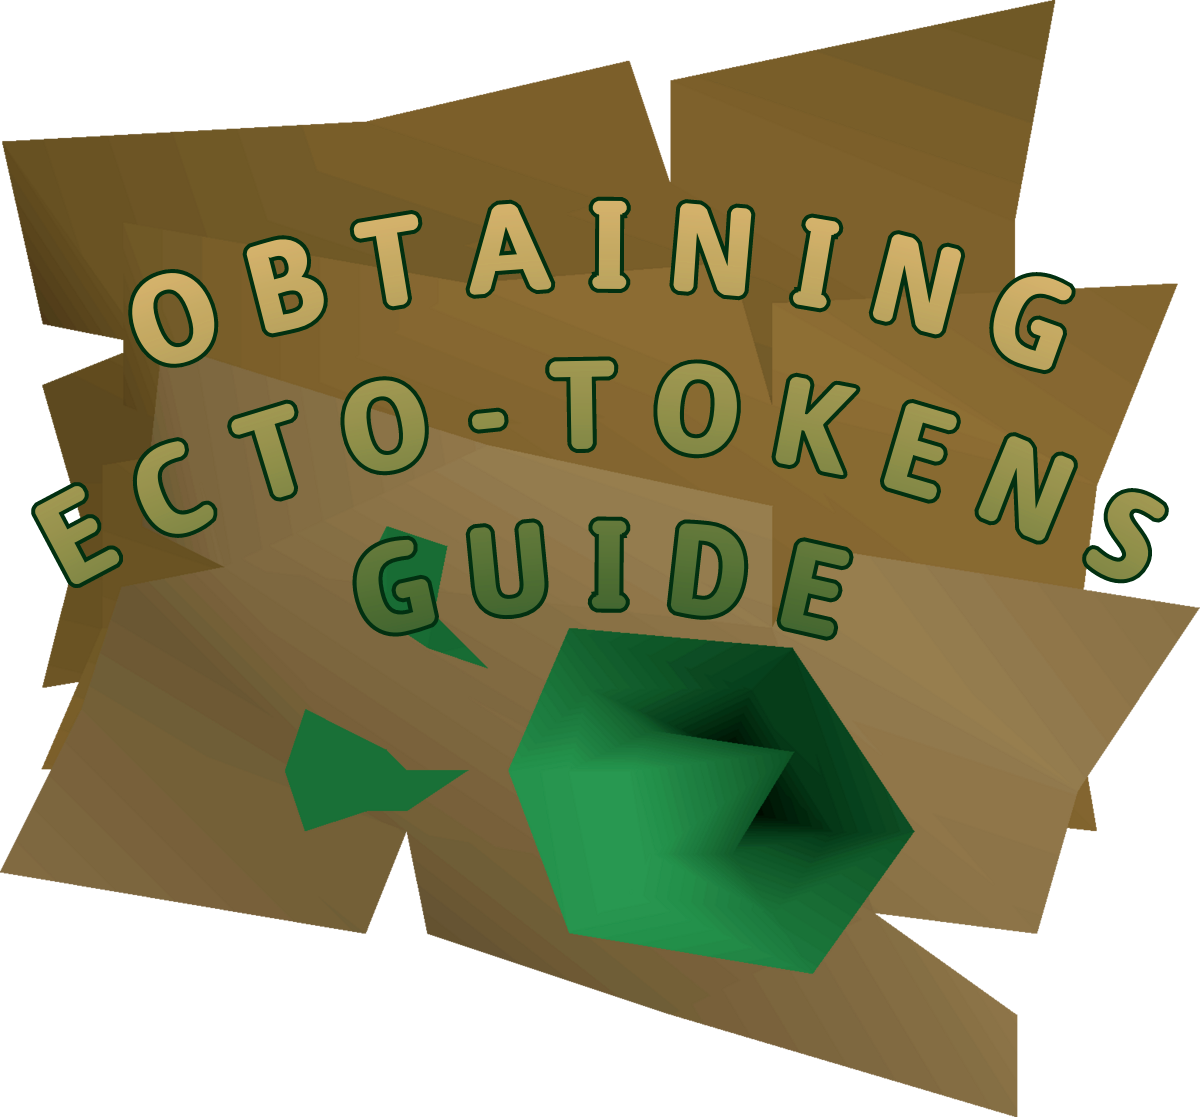 ecto_token_guide_logo.png